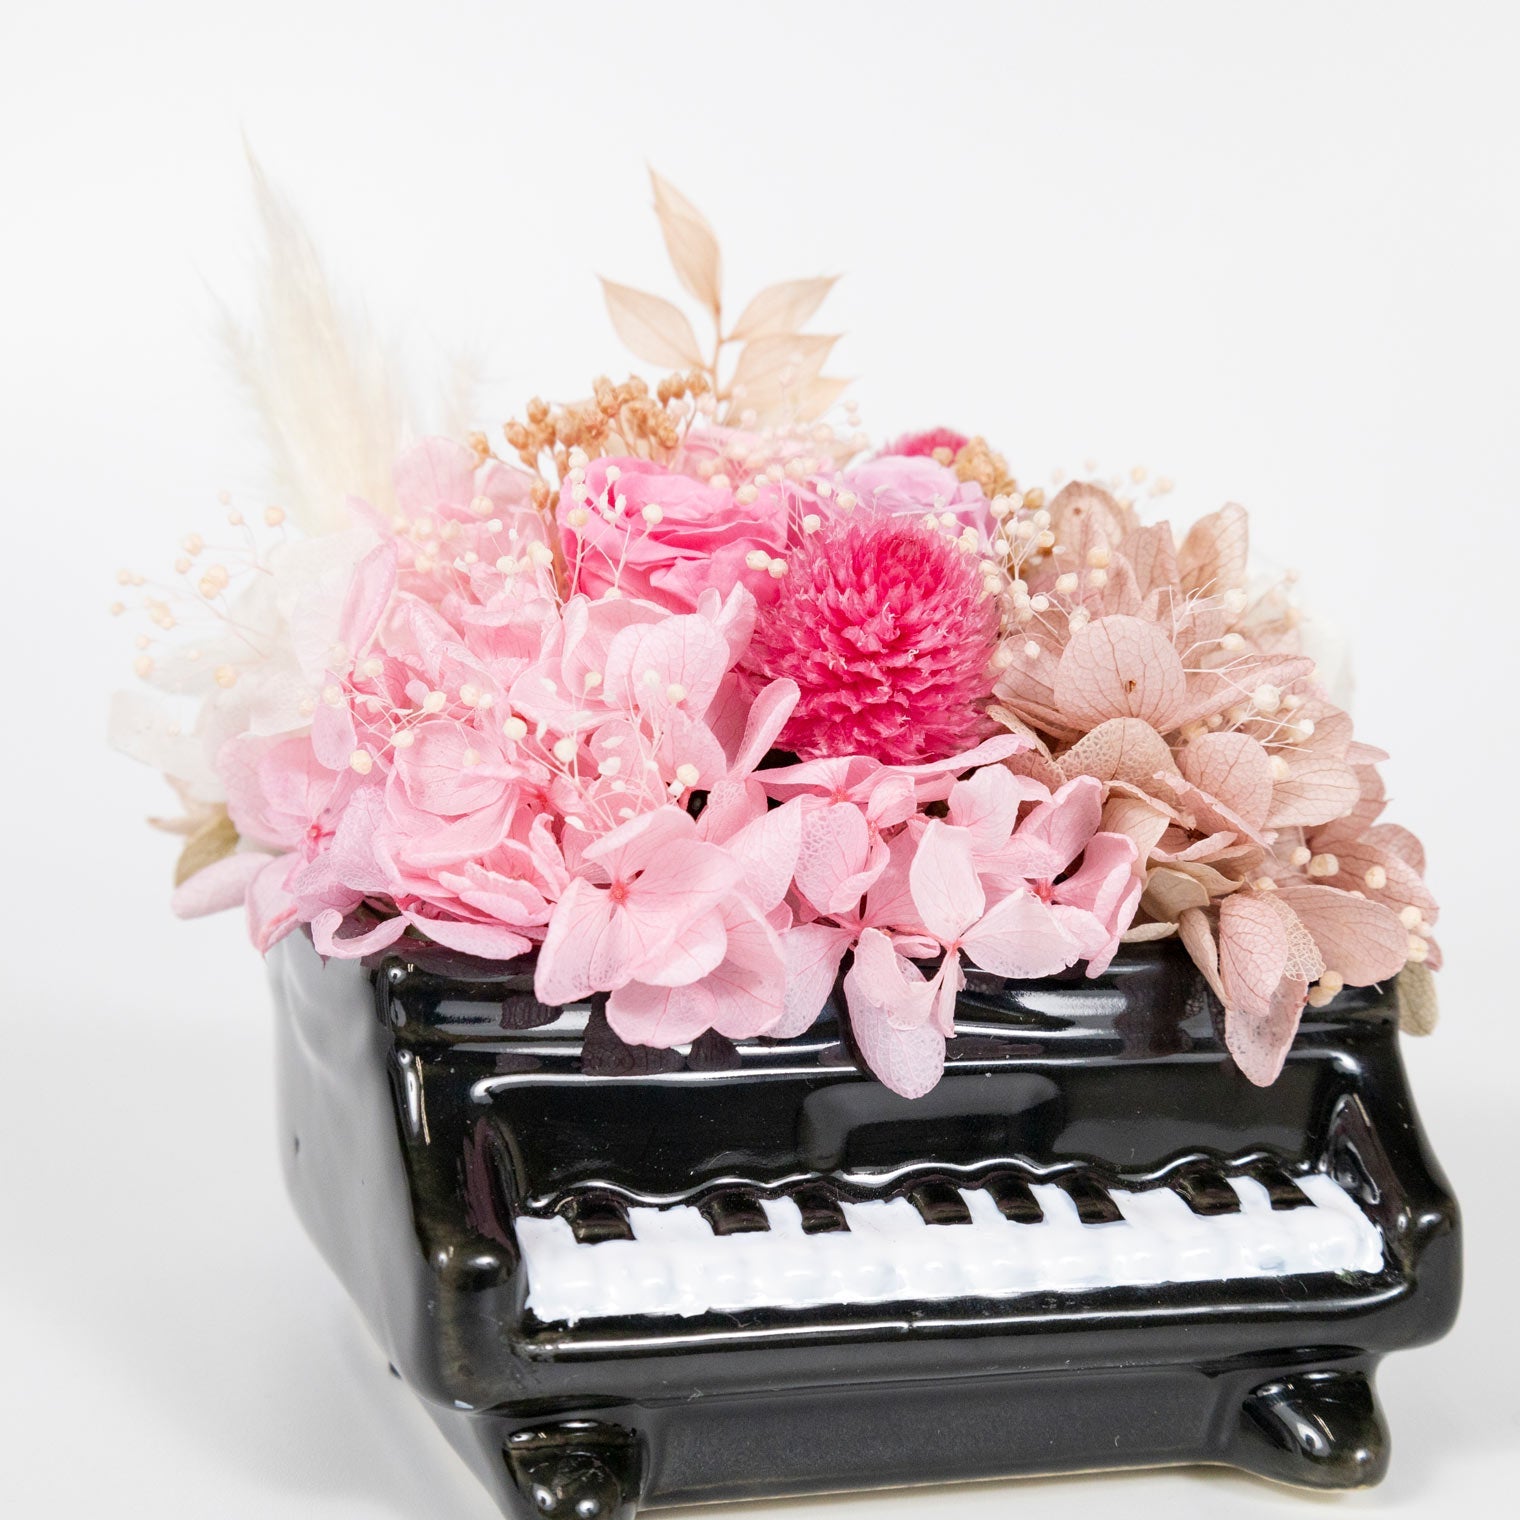 プリザーブドフラワー ピアノ バラ ピンク ( 日本製 / フラワー装飾技能士製作 ) クリアボックスにラッピングしてお届け ピアノ発表会 ギフト プレゼント (JAN:4976416021808)